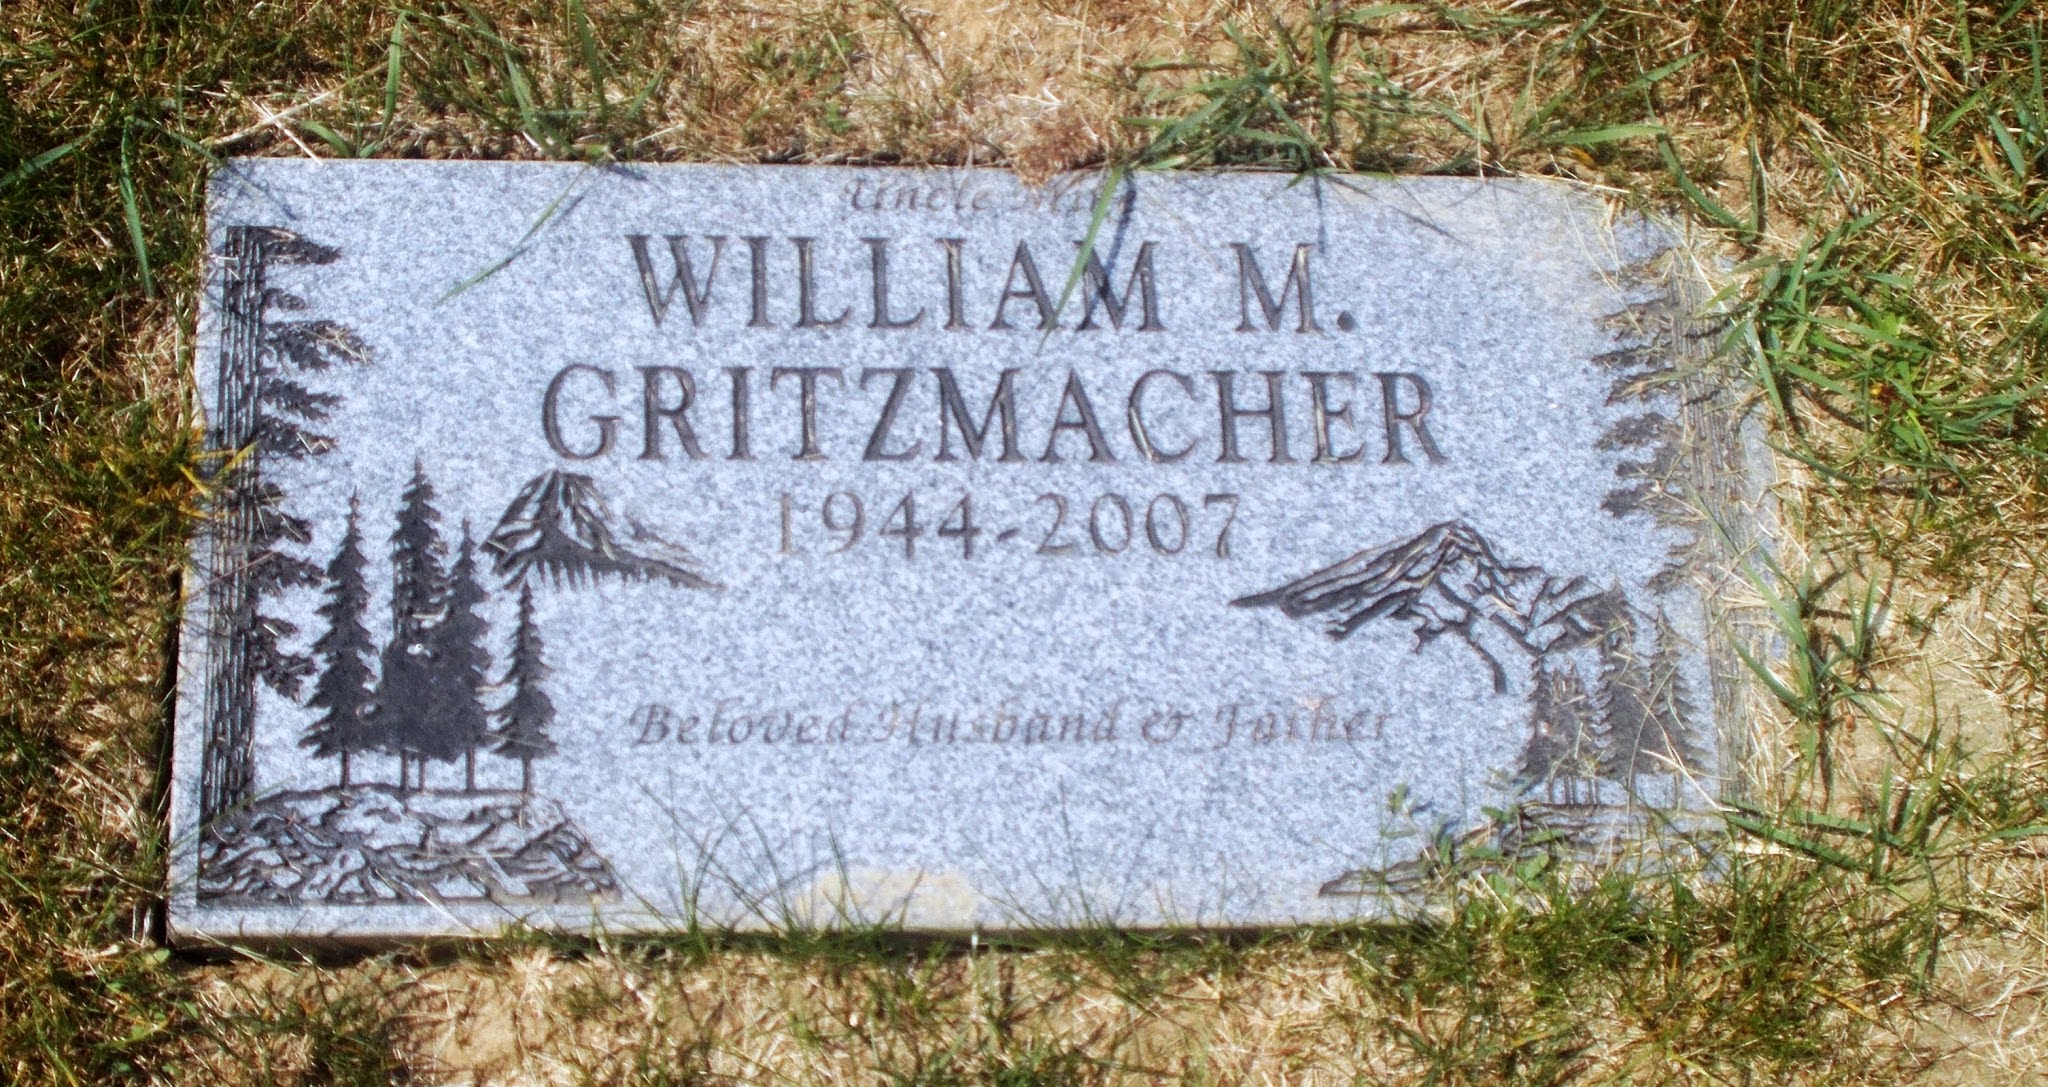 William M Gritzmacher